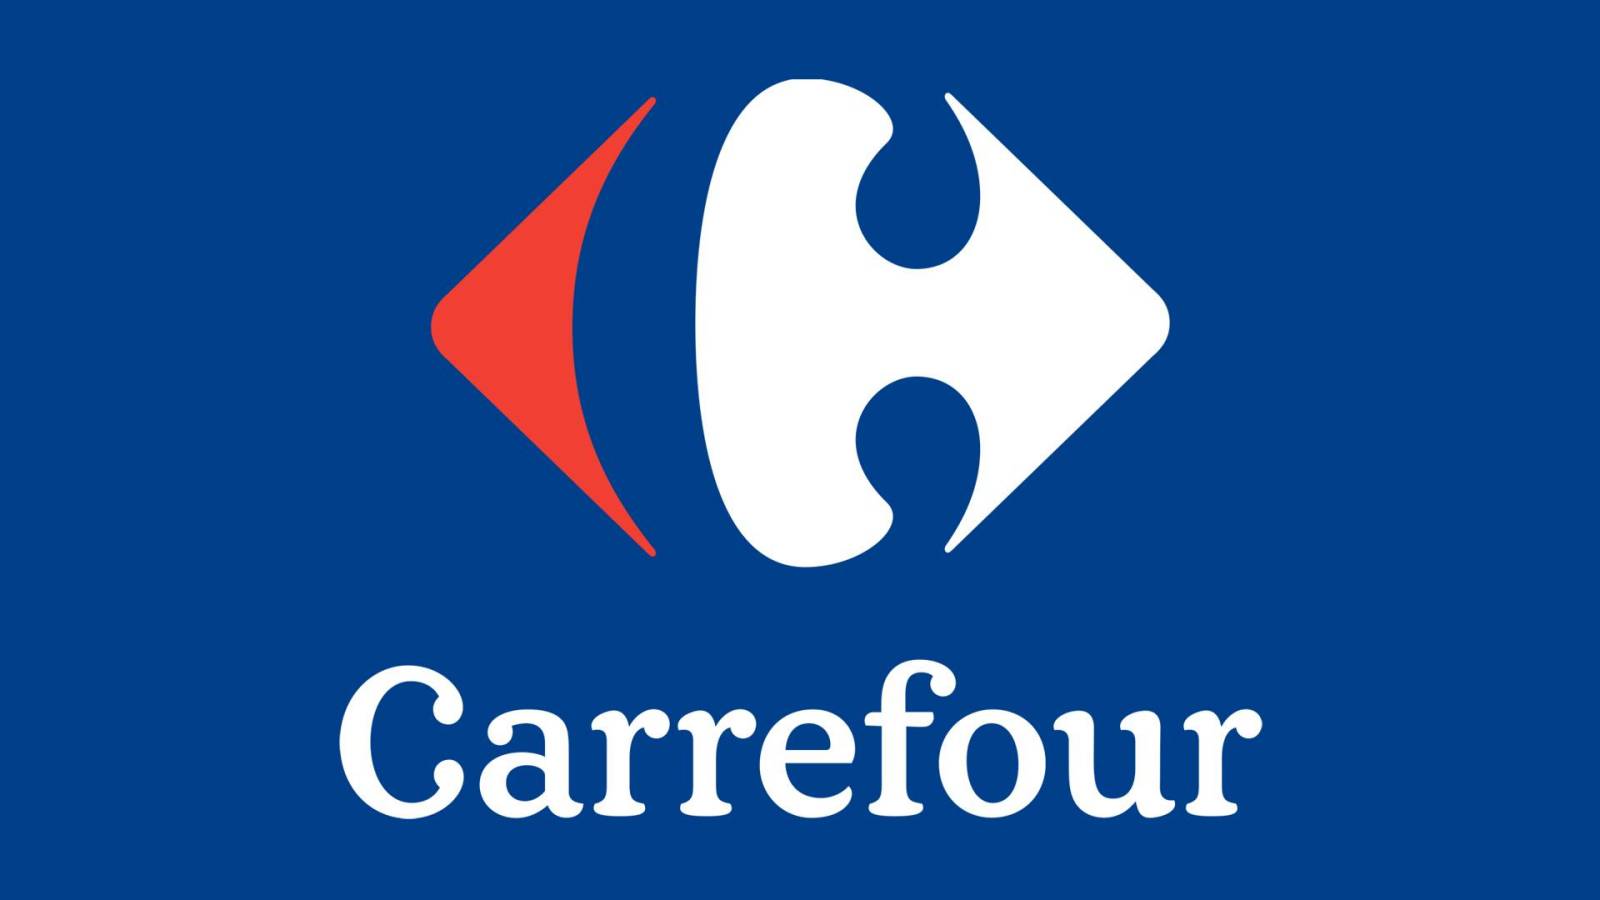 Offizielle Informationen von Carrefour: KOSTENLOSES DACIA-Auto für rumänische Kunden